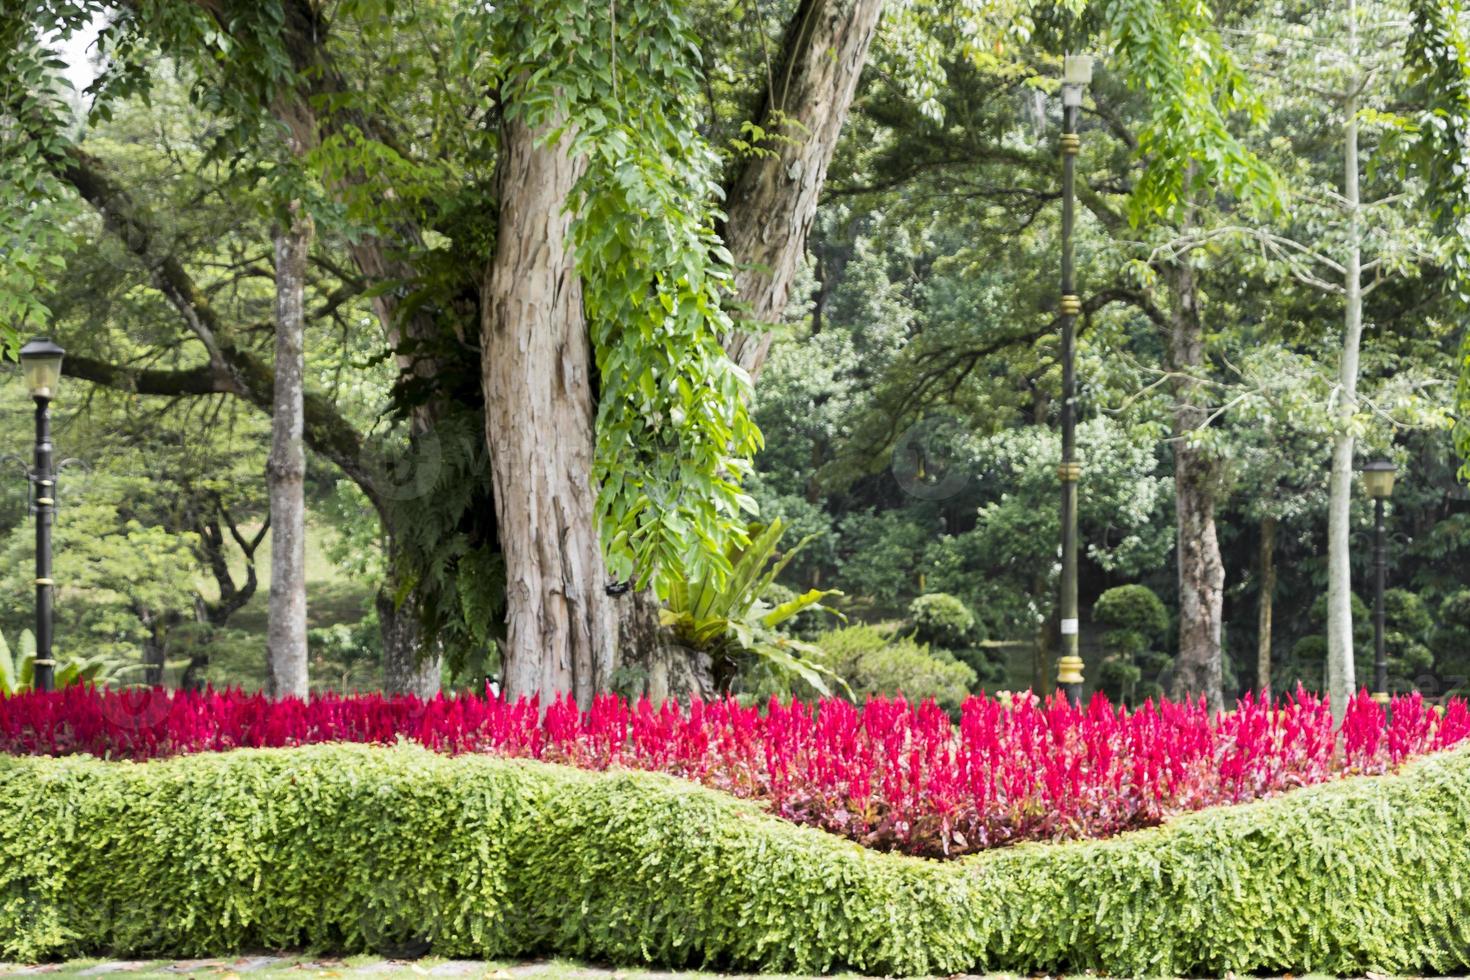 piante di colore rosa-rosso brillante, fiori e un enorme albero del parco, malesia. foto